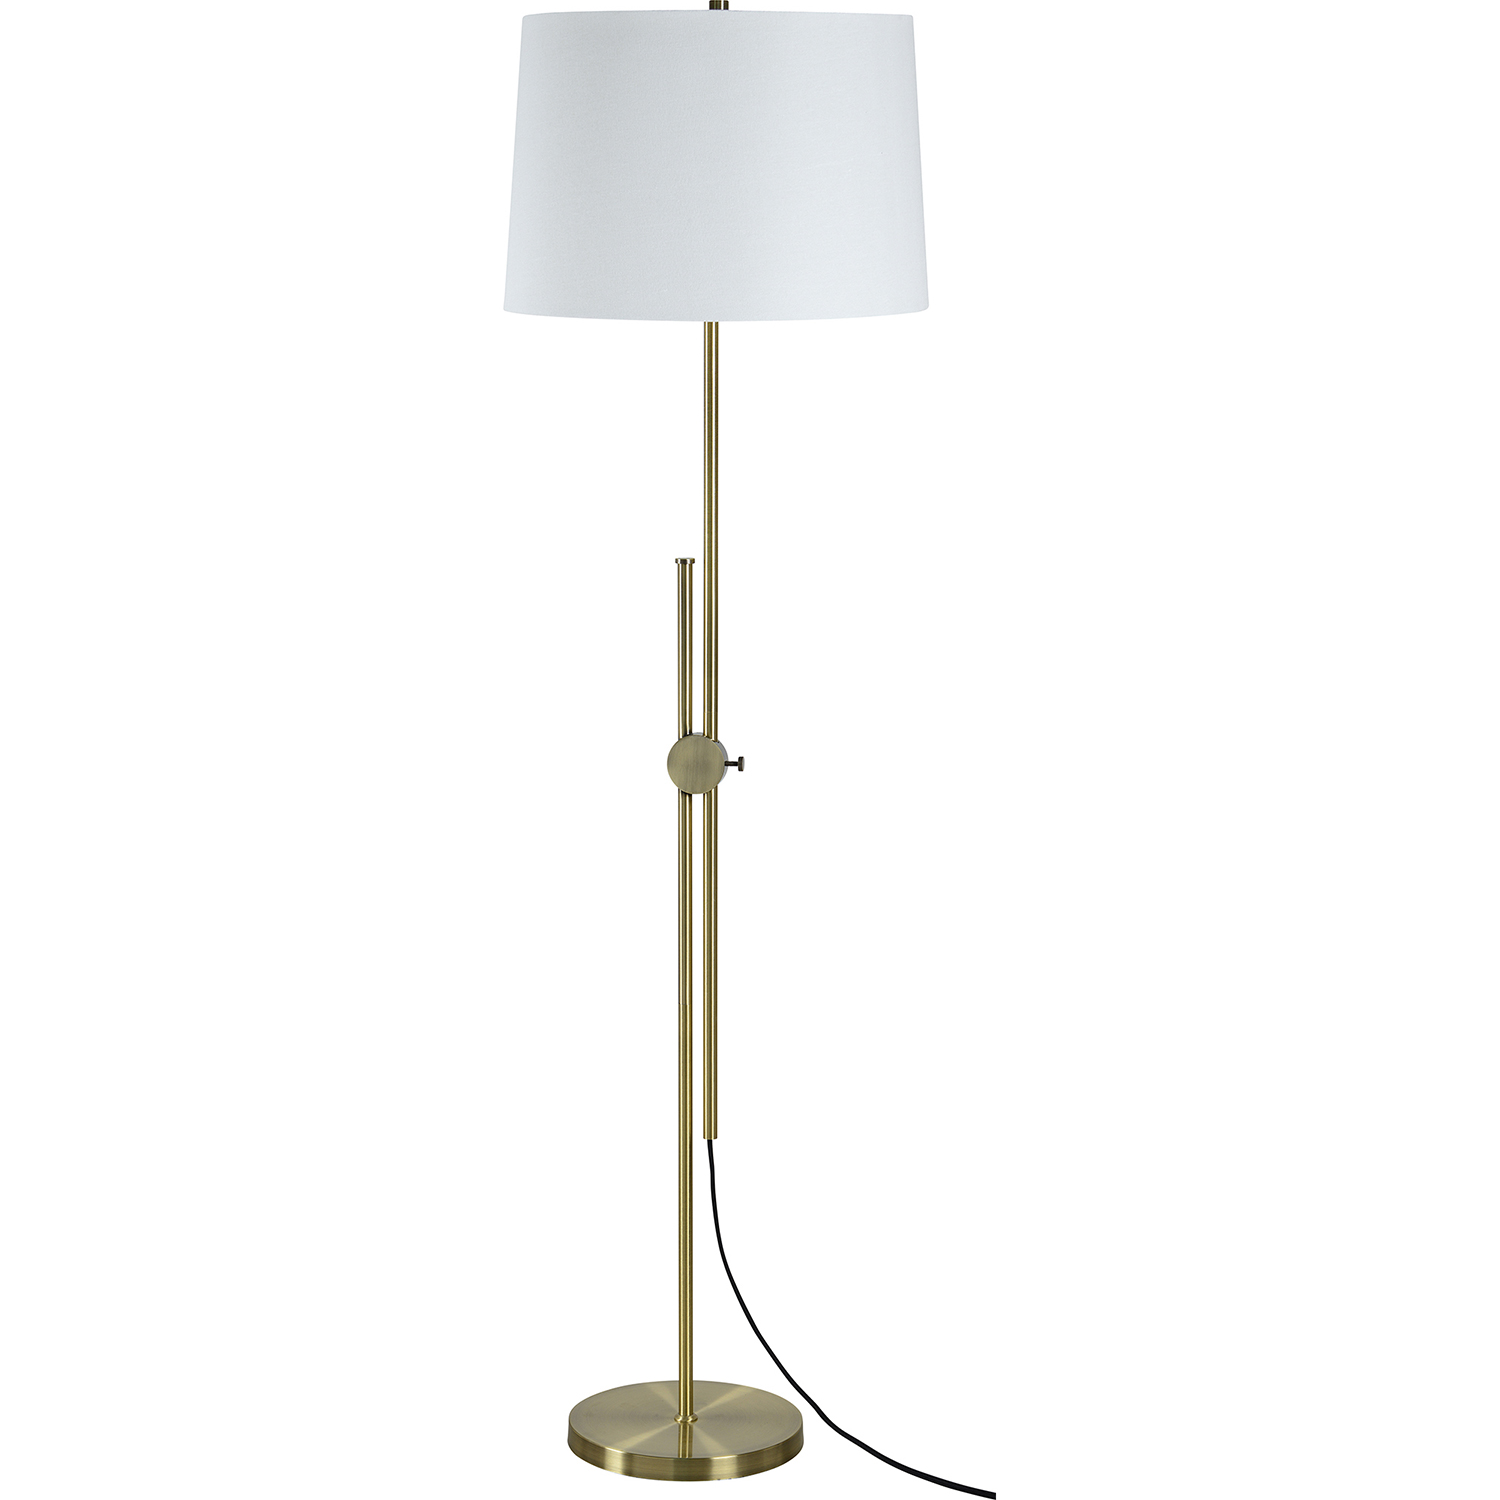 Ren-Wil Nobel Floor Lamp - Antique Brass